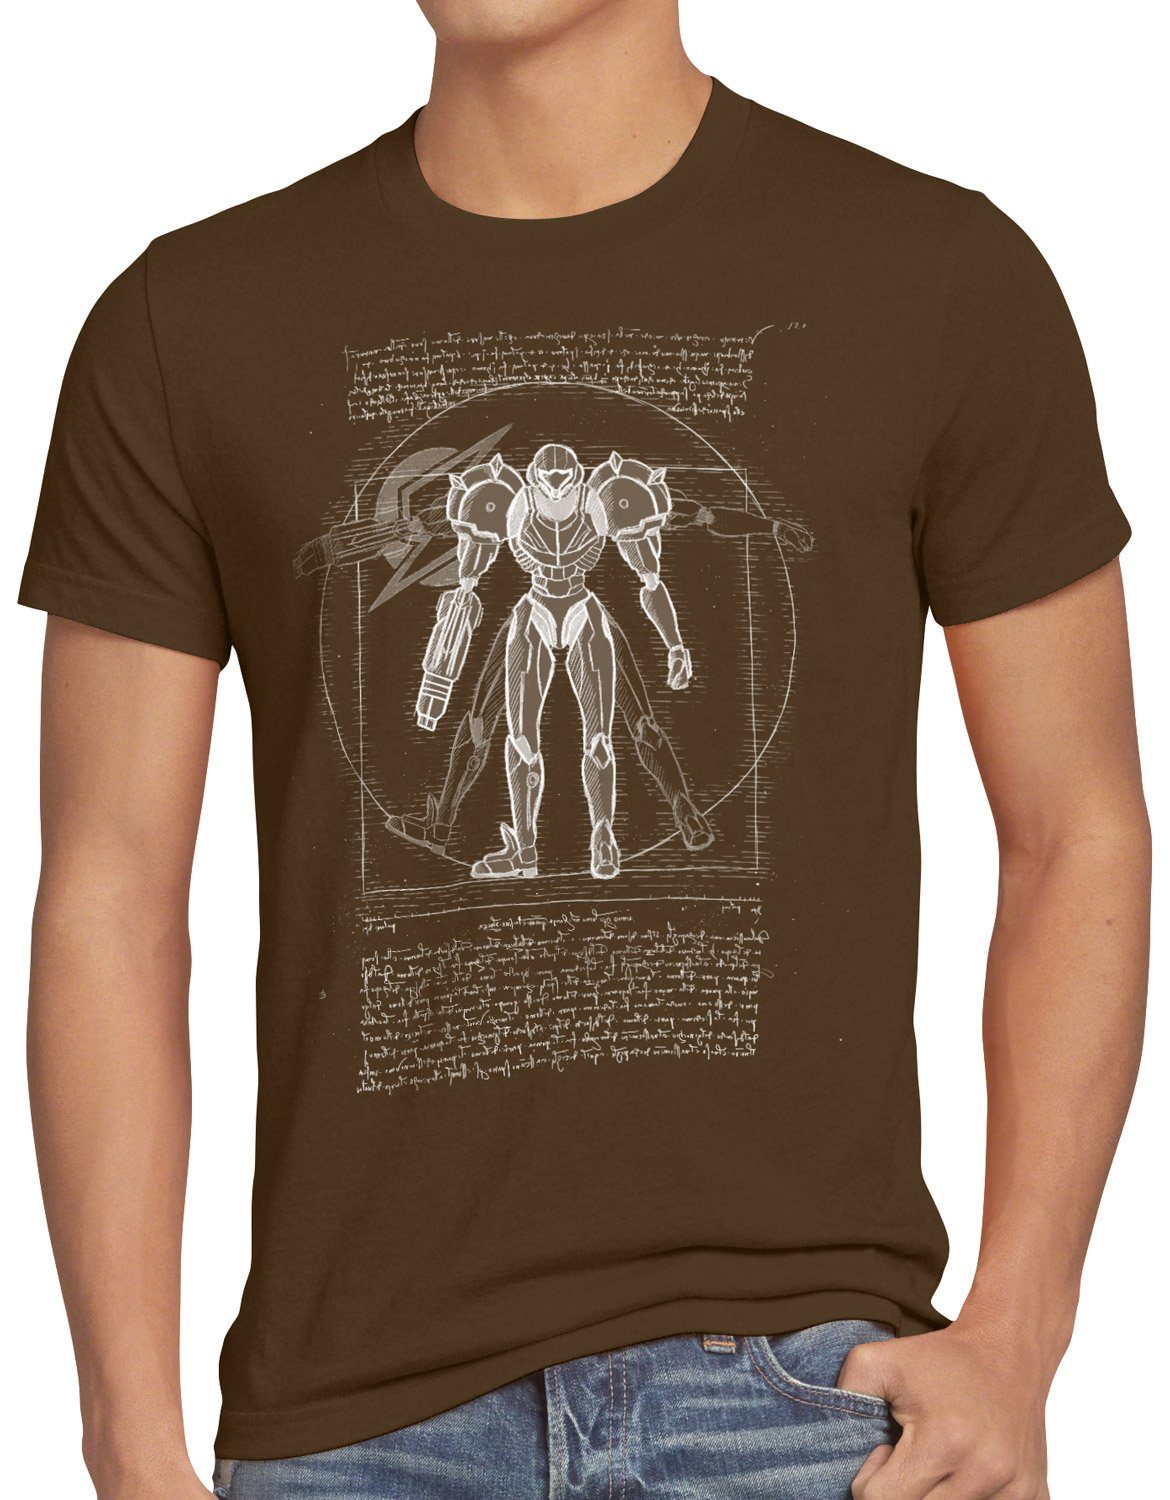 style3 Print-Shirt Herren T-Shirt Vitruvianische Samus Return metroid nerd gamer nes snes braun